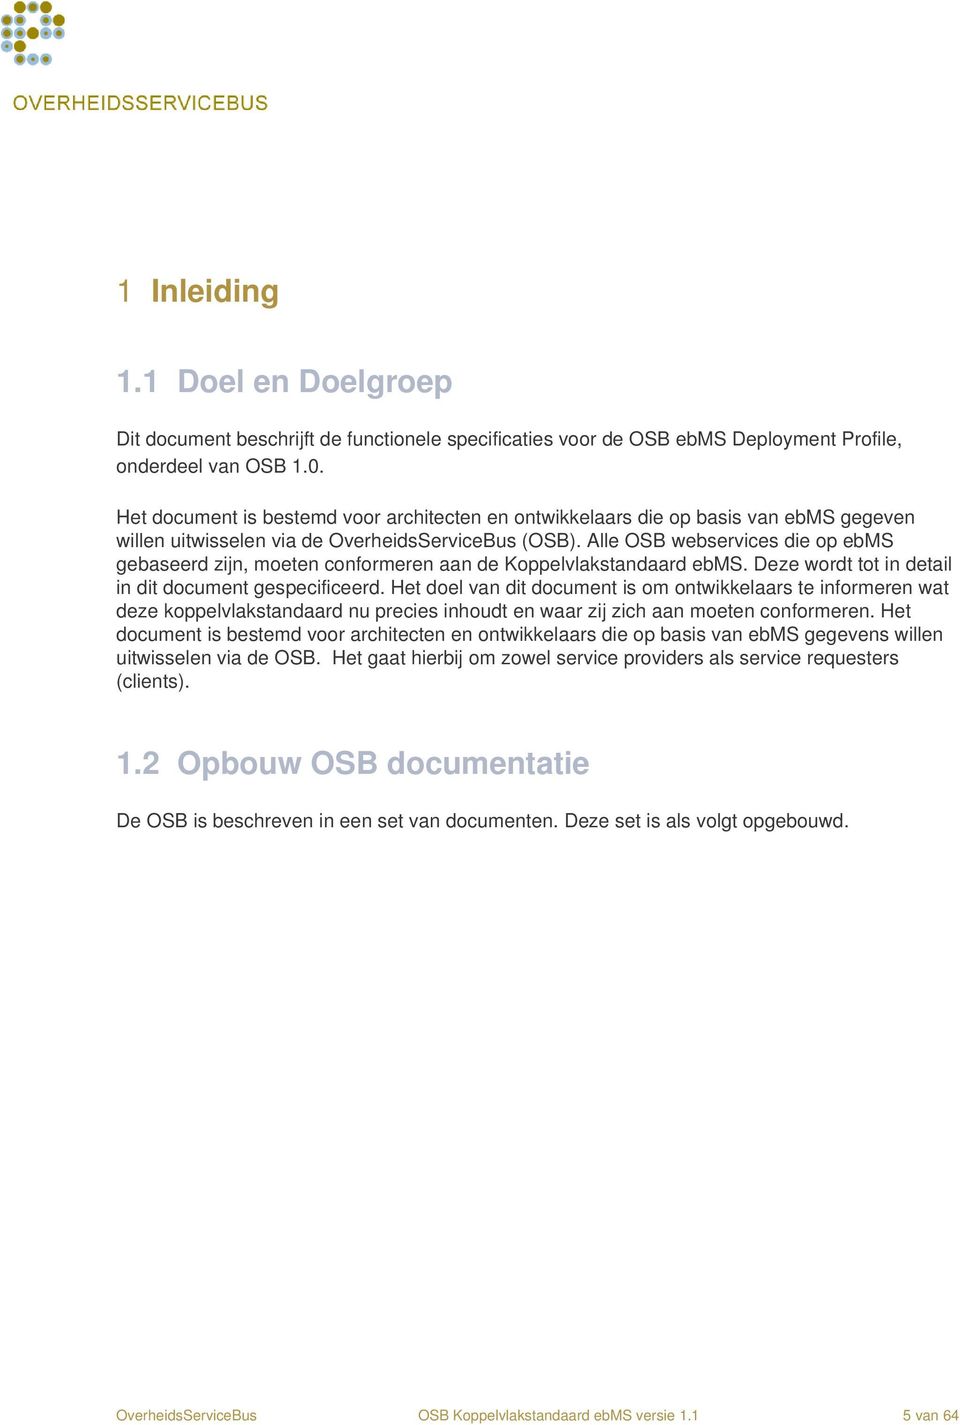 Alle OSB webservices die op ebms gebaseerd zijn, moeten conformeren aan de Koppelvlakstandaard ebms. Deze wordt tot in detail in dit document gespecificeerd.